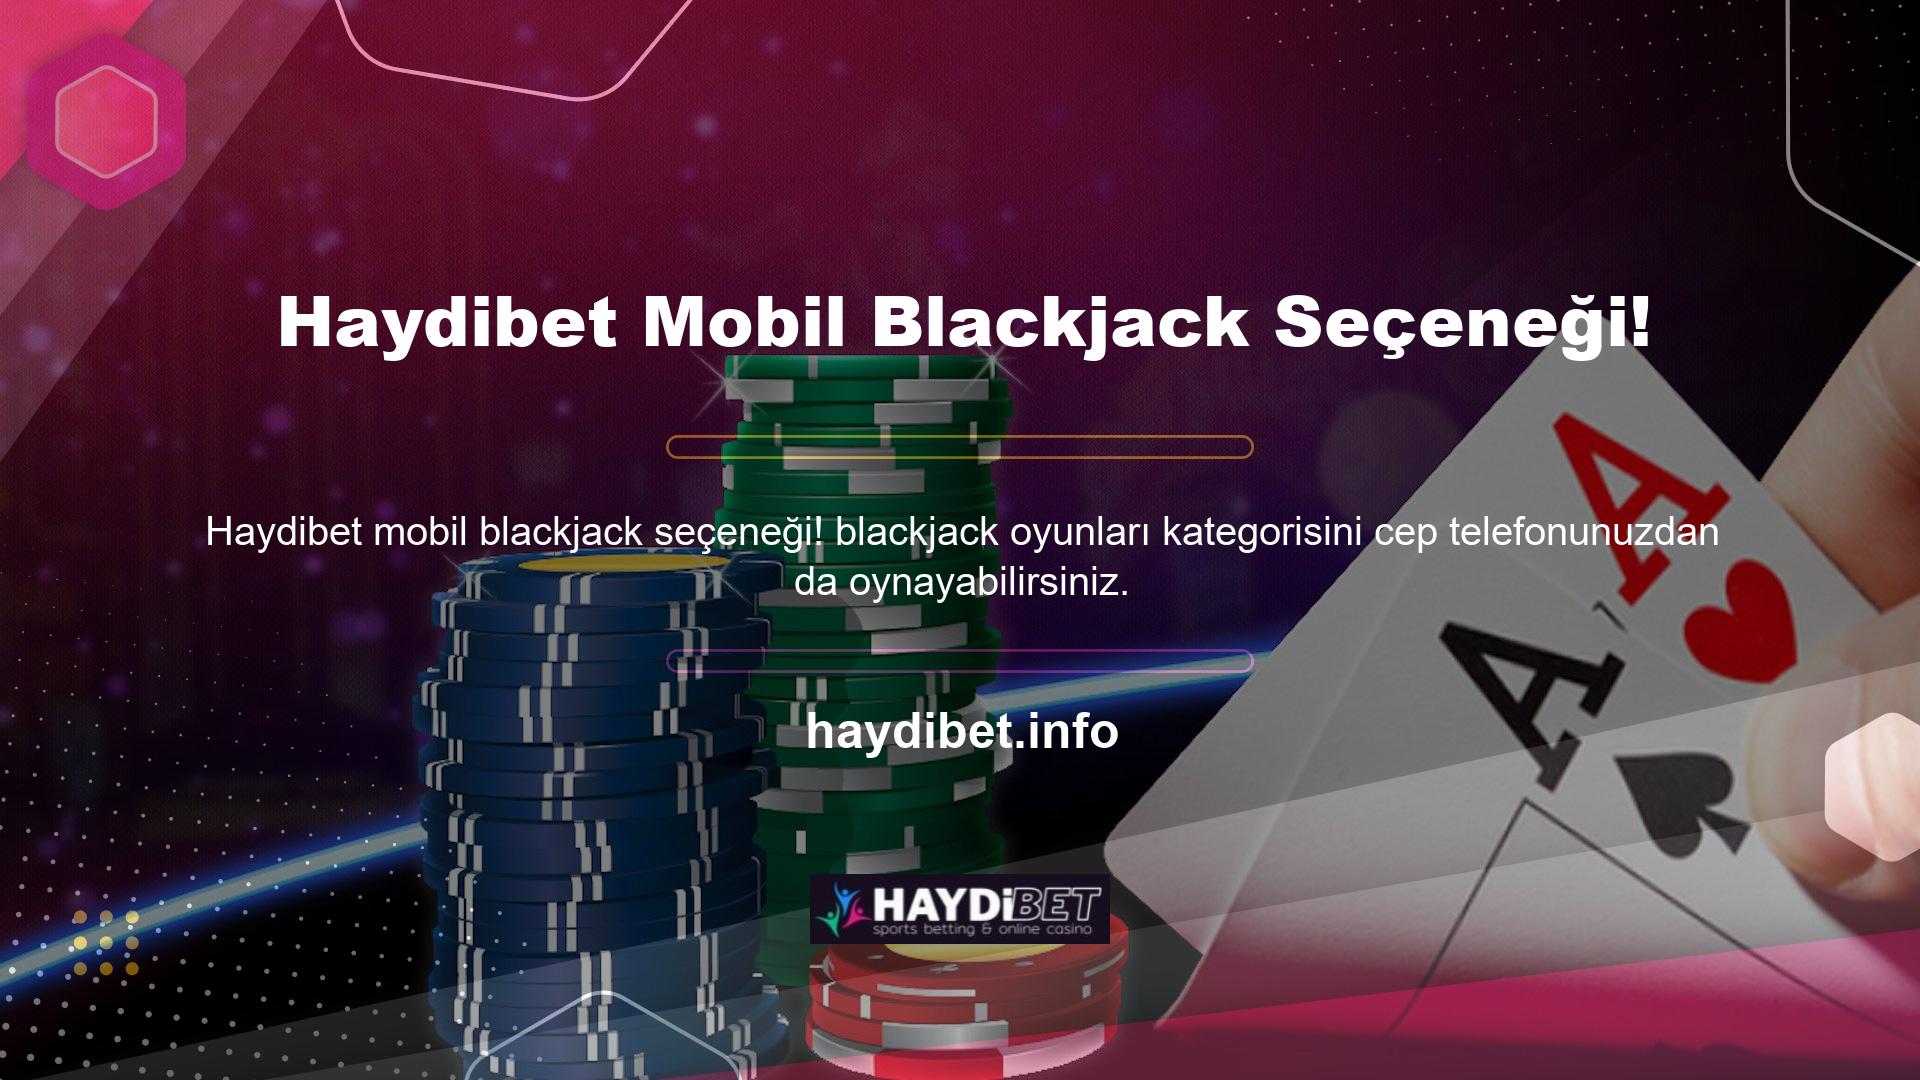 Mobil bahis sitemize giriş yaparak cep telefonunuzdan veya tabletinizden blackjack hizmetlerine erişebilirsiniz